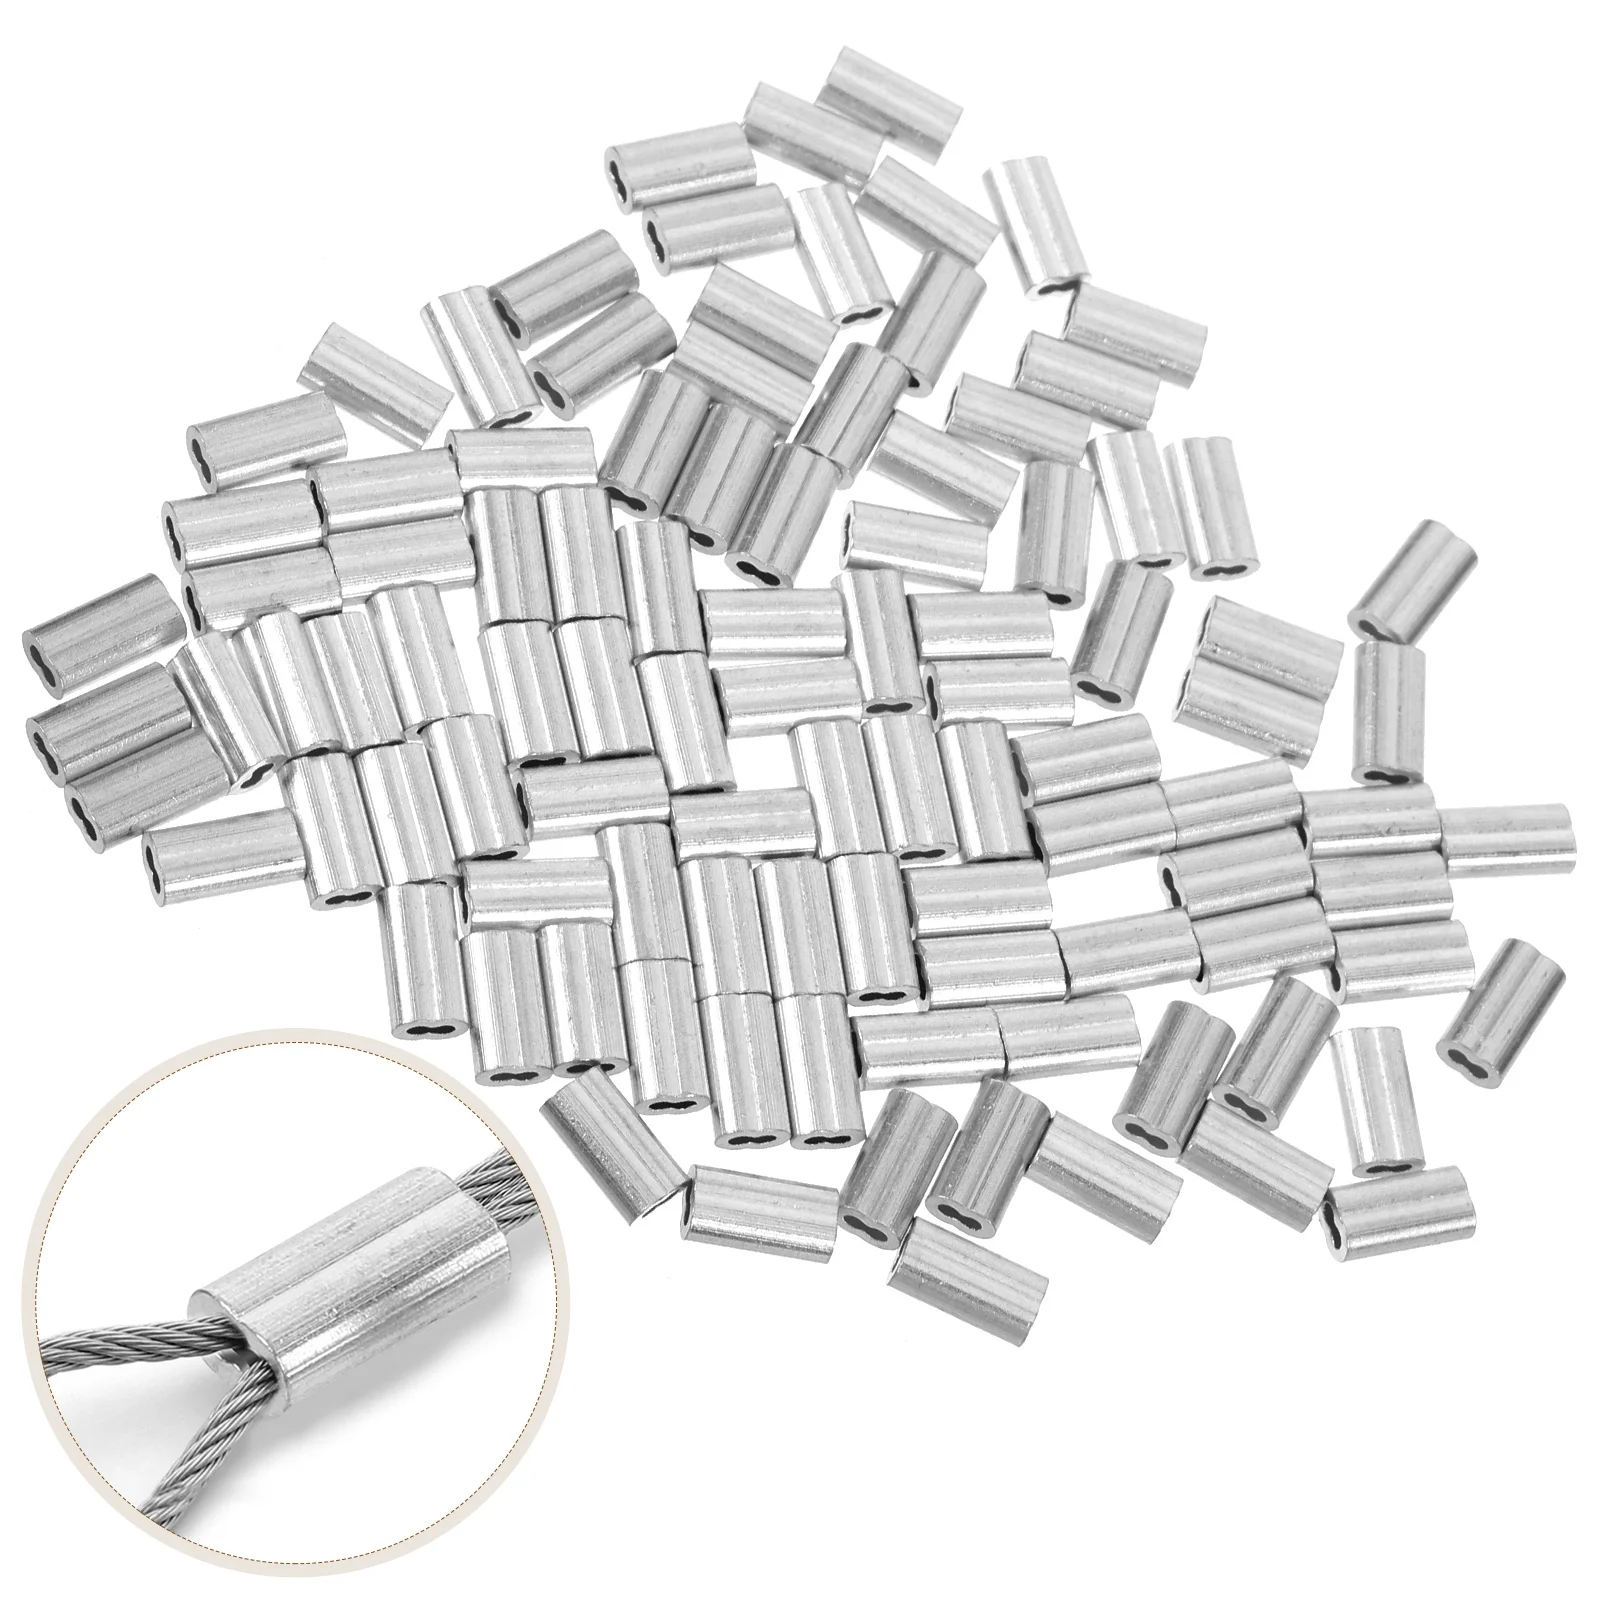 

100 шт. 8-образные алюминиевые обжимные муфты для проводов Легкое крепление обжимные муфты для веревок обжимные инструменты для установки кабельных зажимов